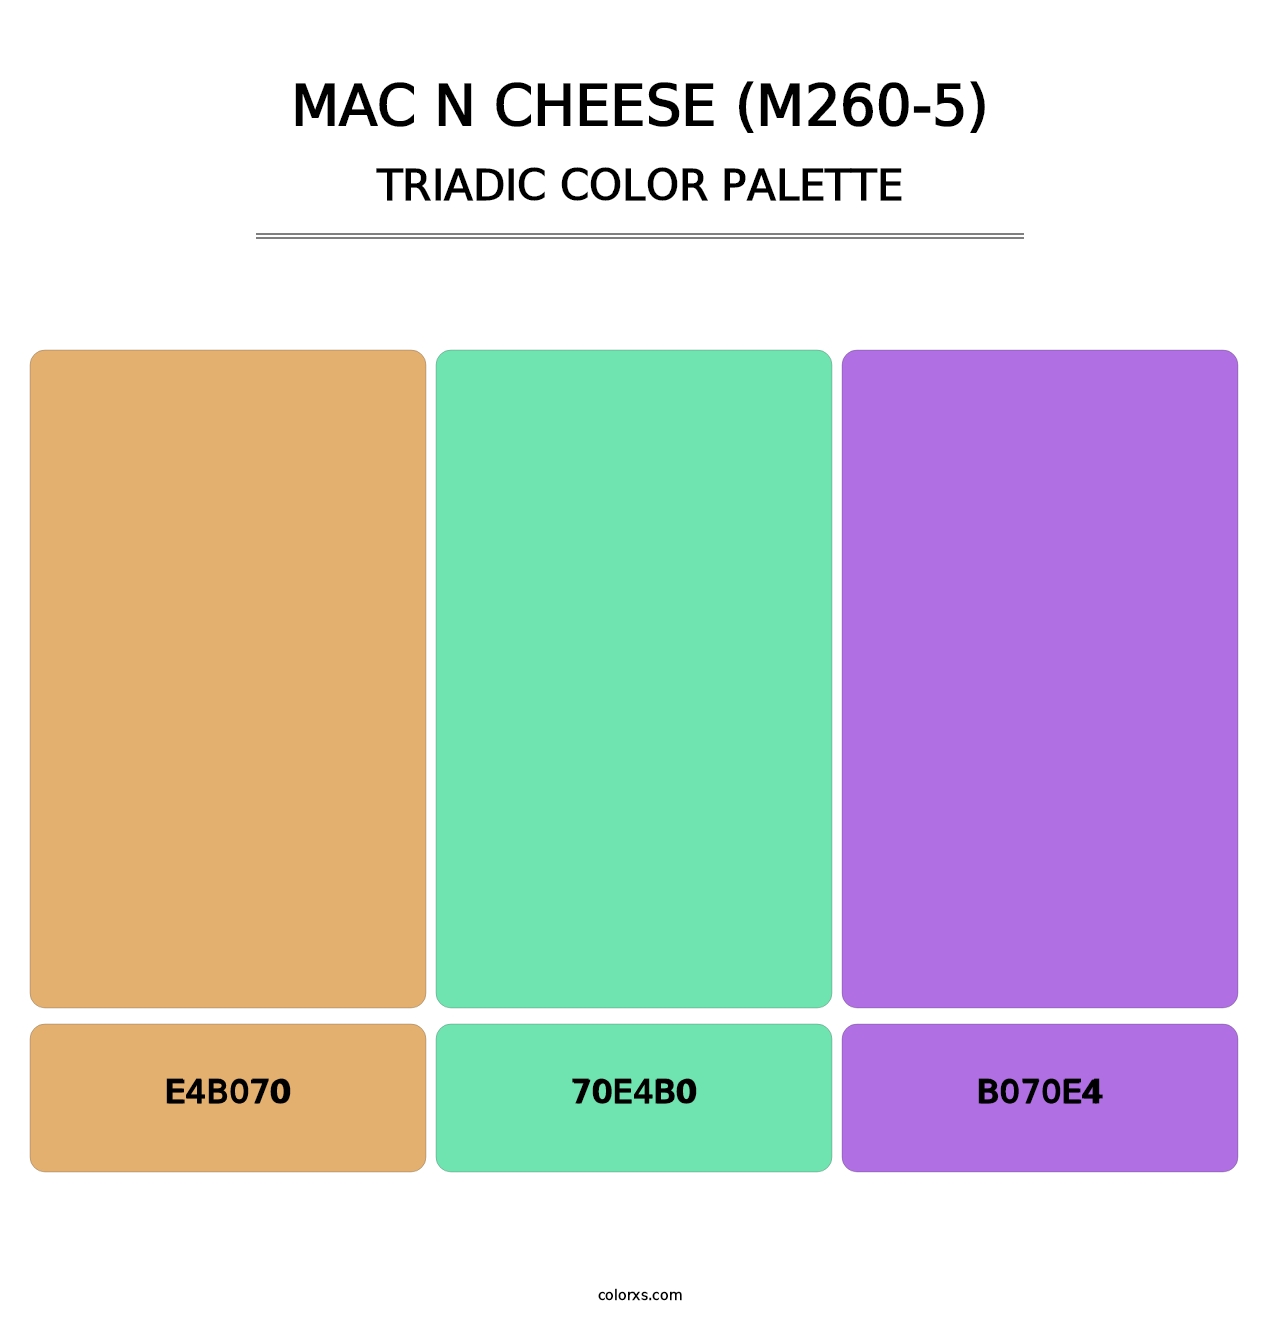 Mac N Cheese (M260-5) - Triadic Color Palette